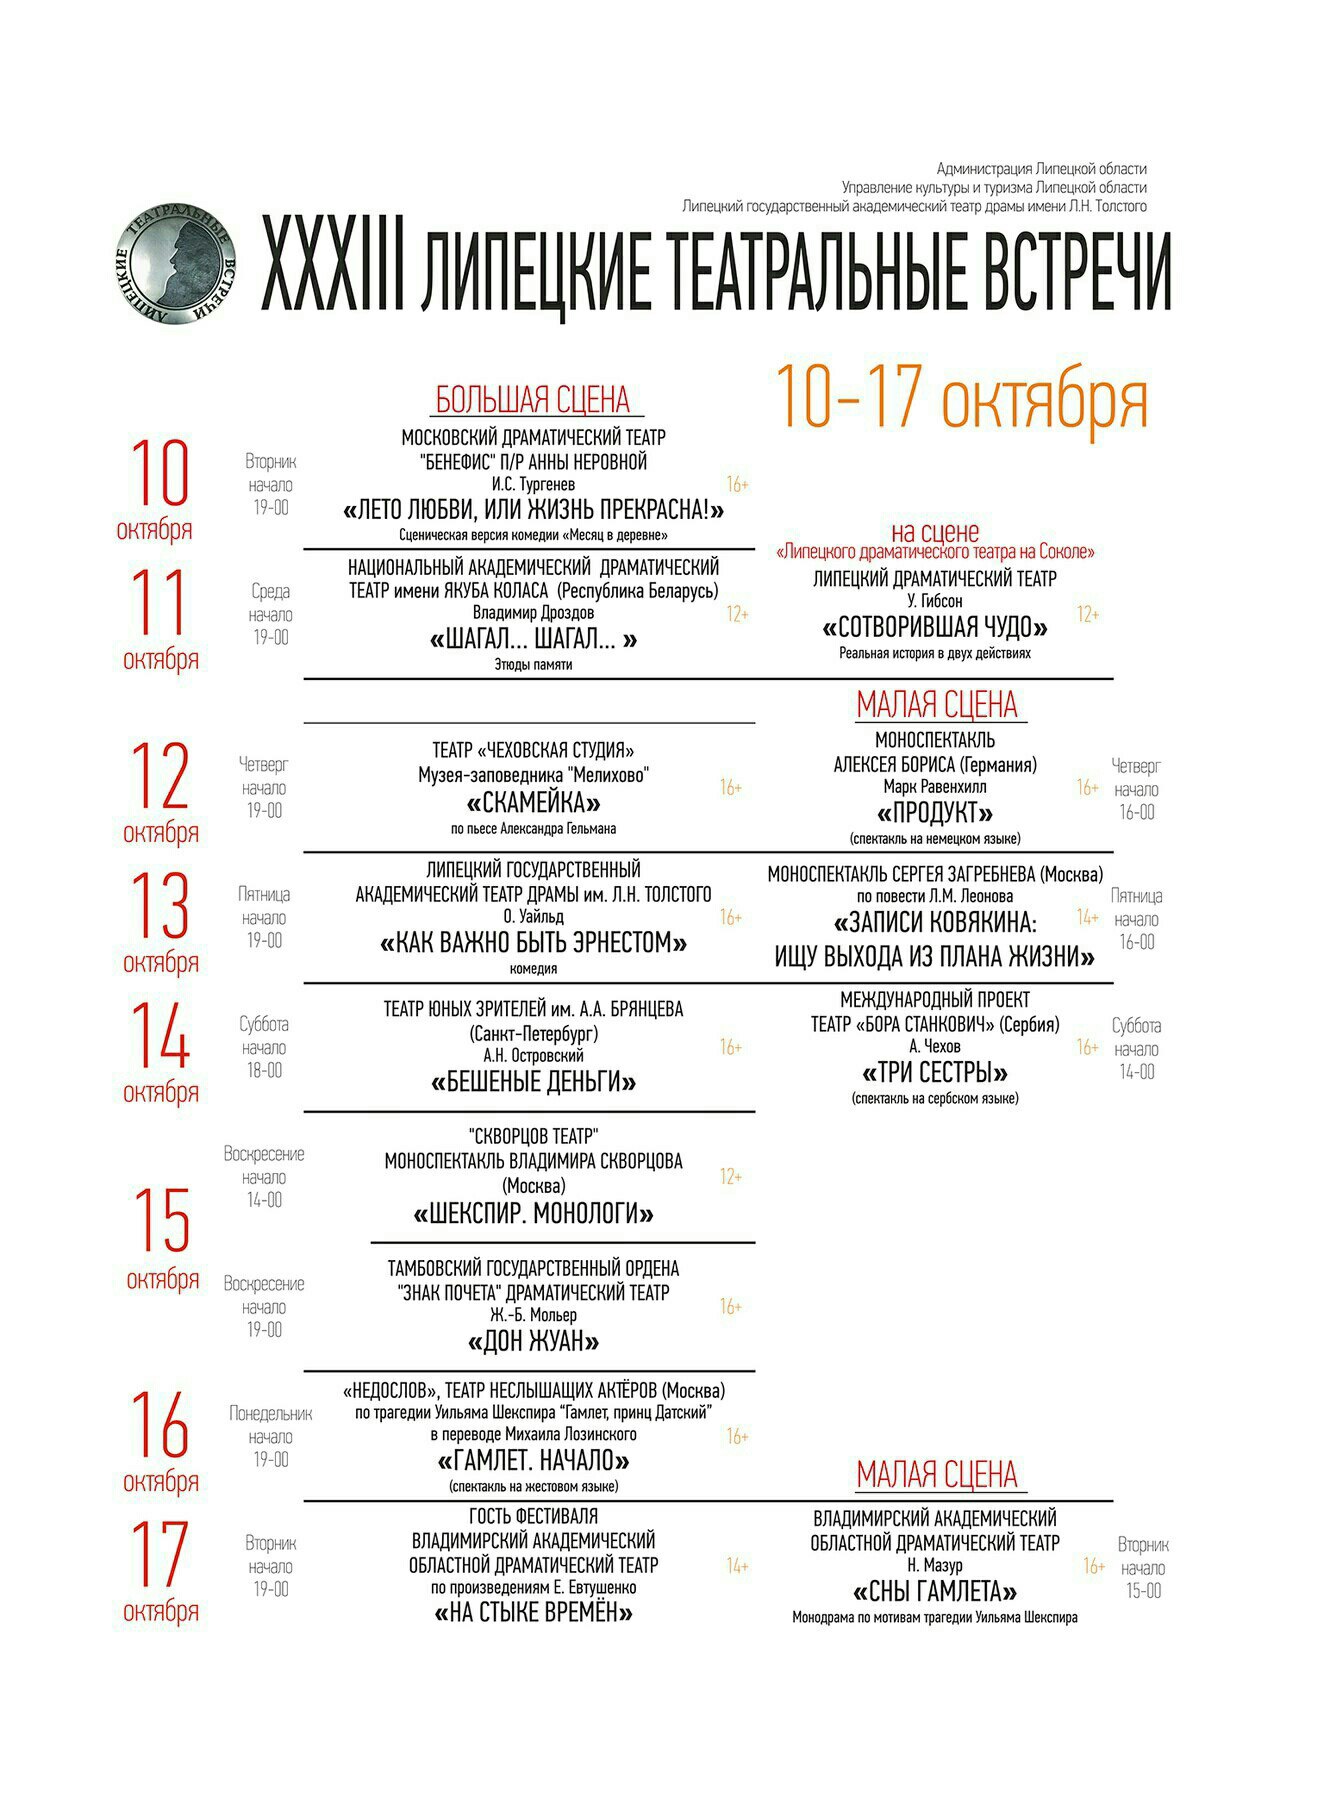 XXXIII Международный театральный фестиваль «Липецкие театральные встречи»